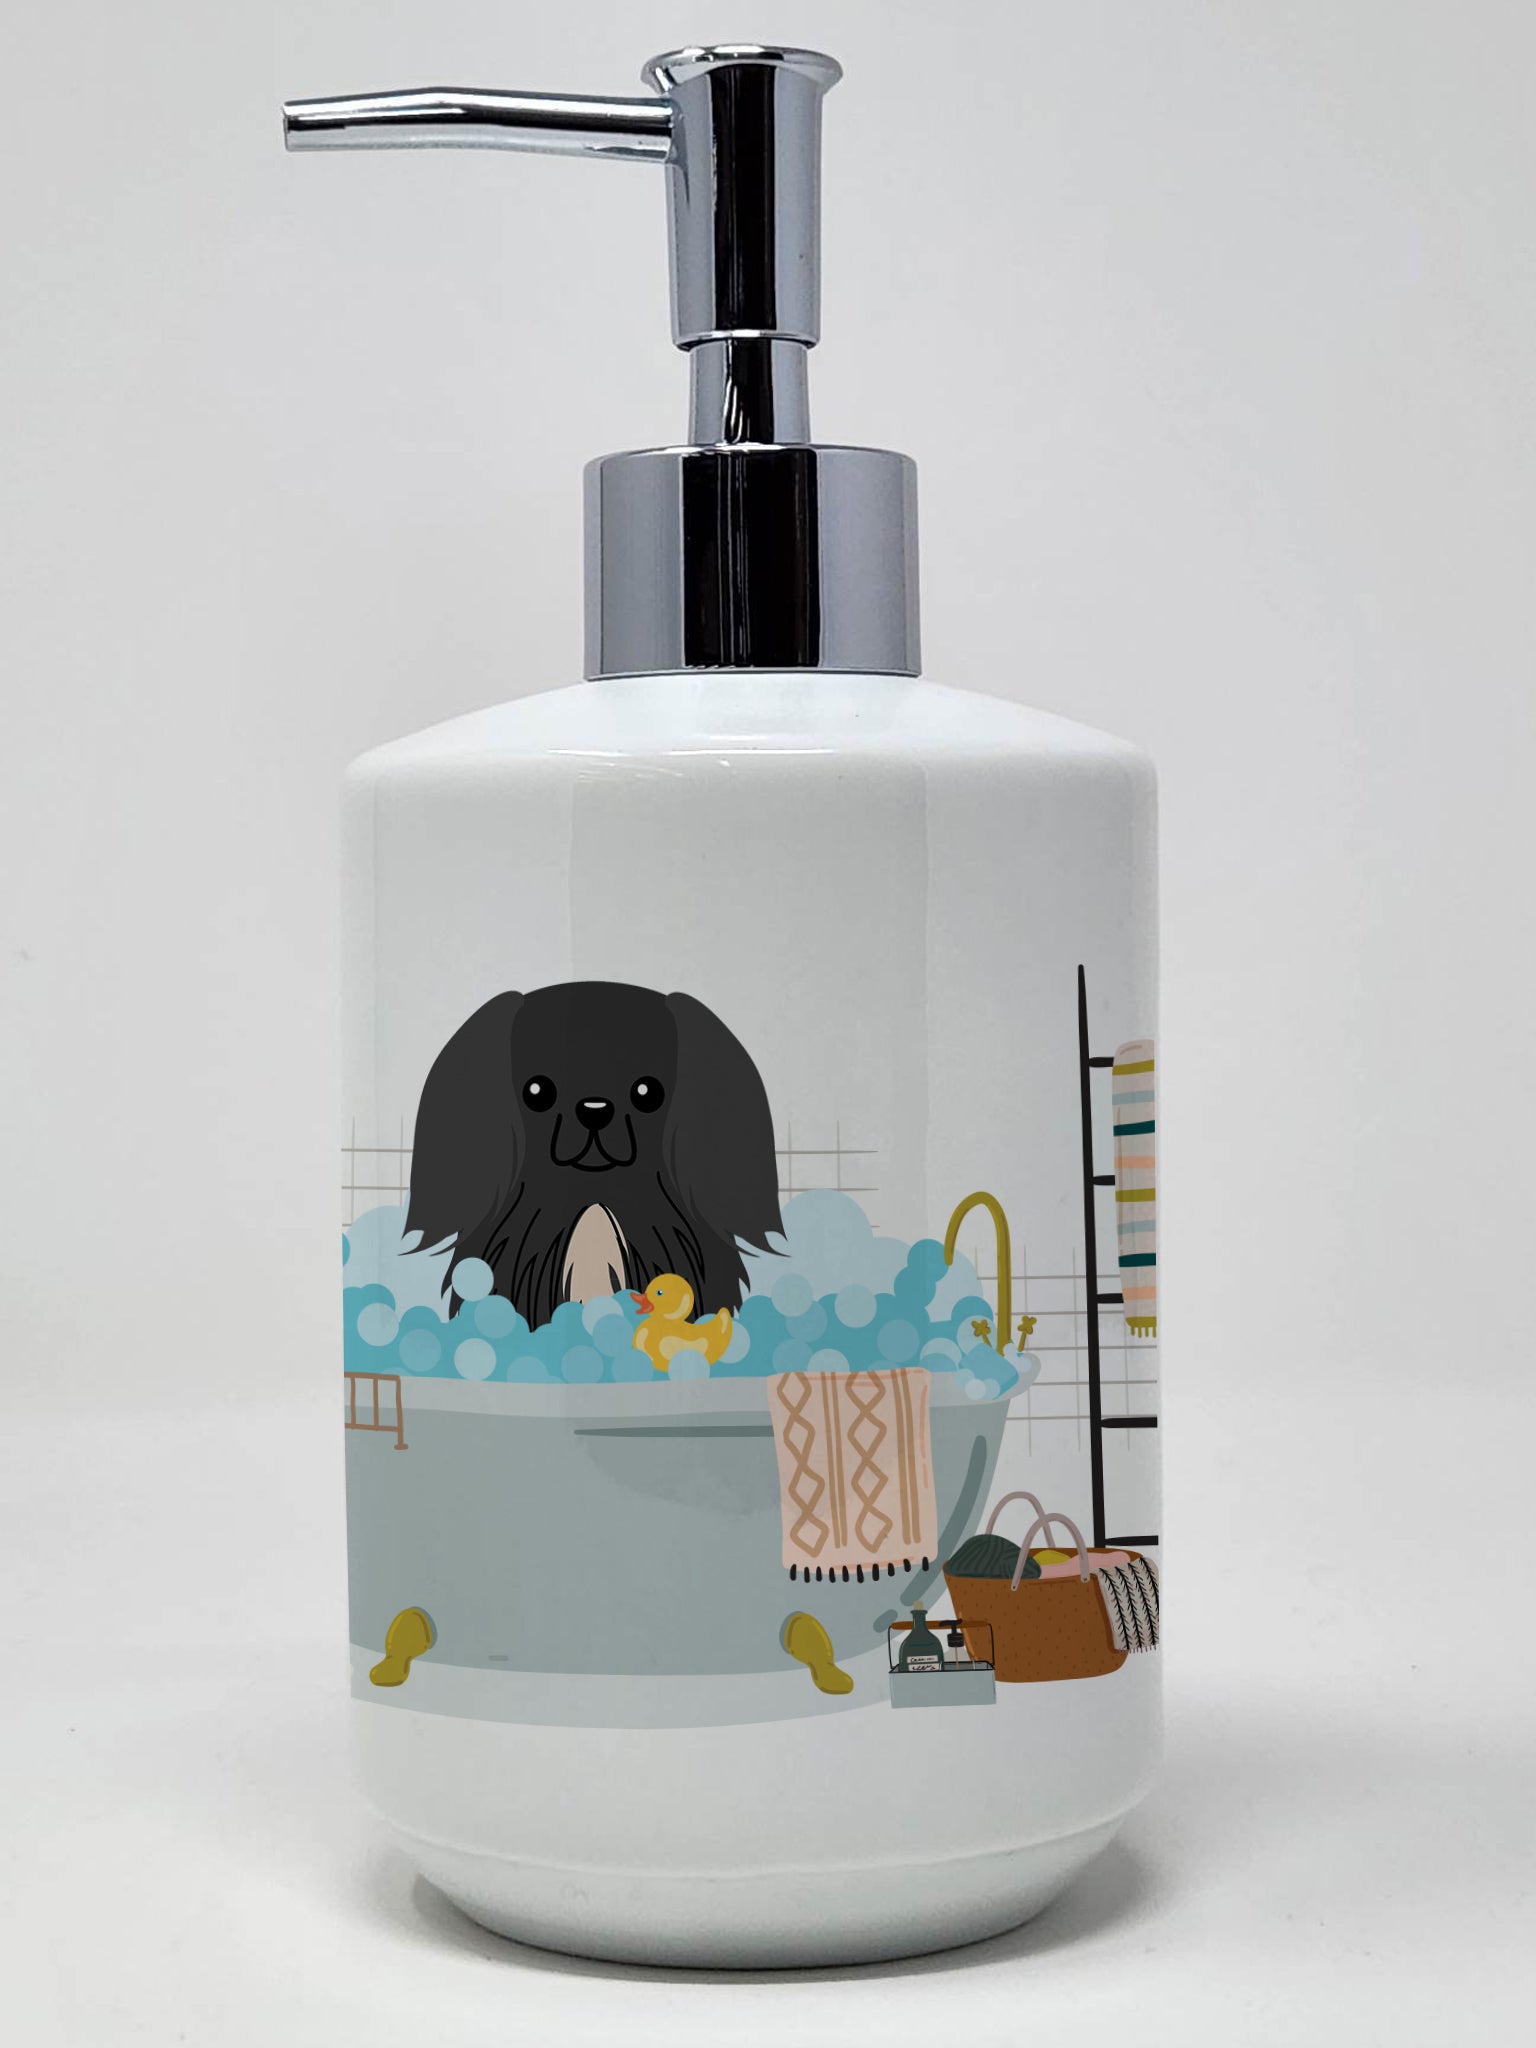 Buy this Black Pekingese in Bathtub Ceramic Soap Dispenser